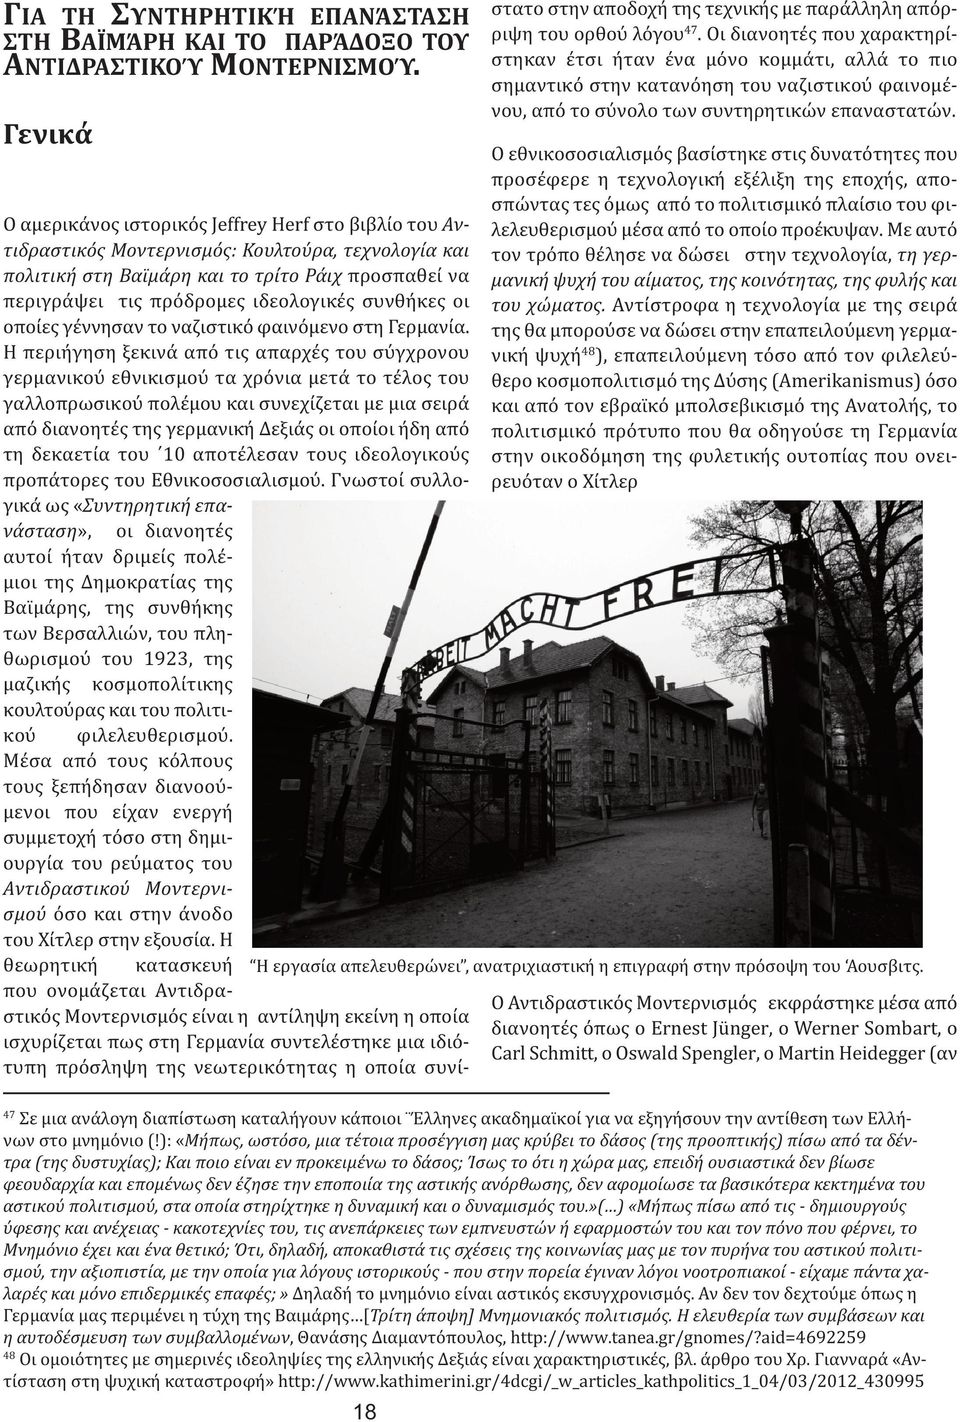 ιδεολογικές συνθήκες οι οποίες γέννησαν το ναζιστικό φαινόμενο στη Γερμανία.